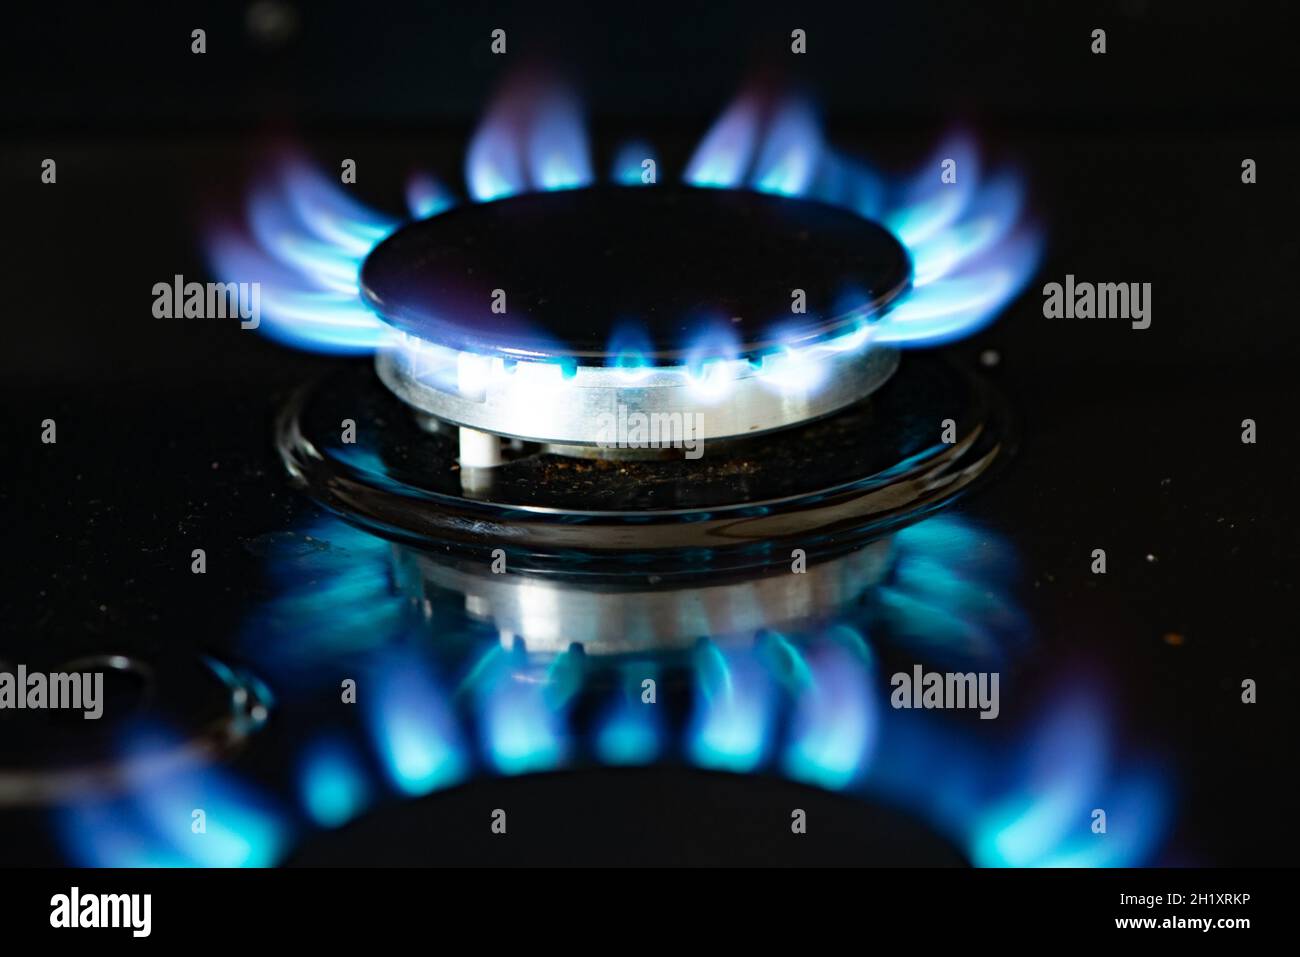 Un anneau de gaz allumé sur une cuisinière, Cumbria, Royaume-Uni. Banque D'Images